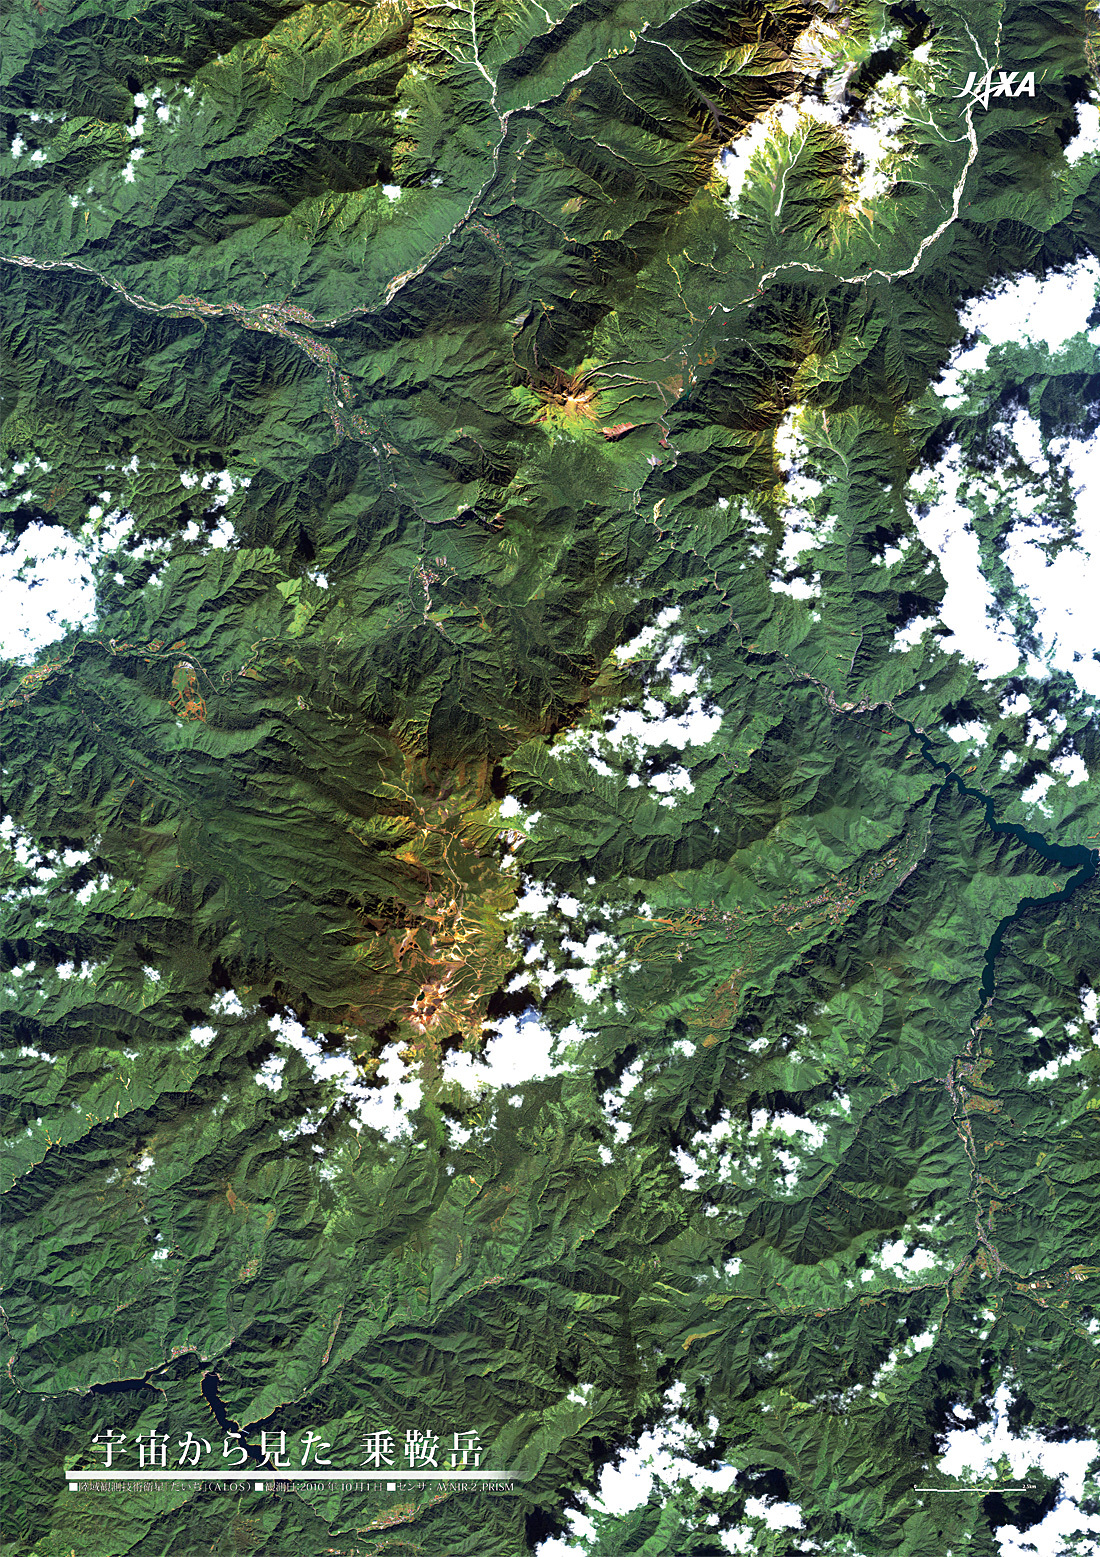 だいちから見た日本の都市 乗鞍岳:衛星画像（ポスター仕上げ）